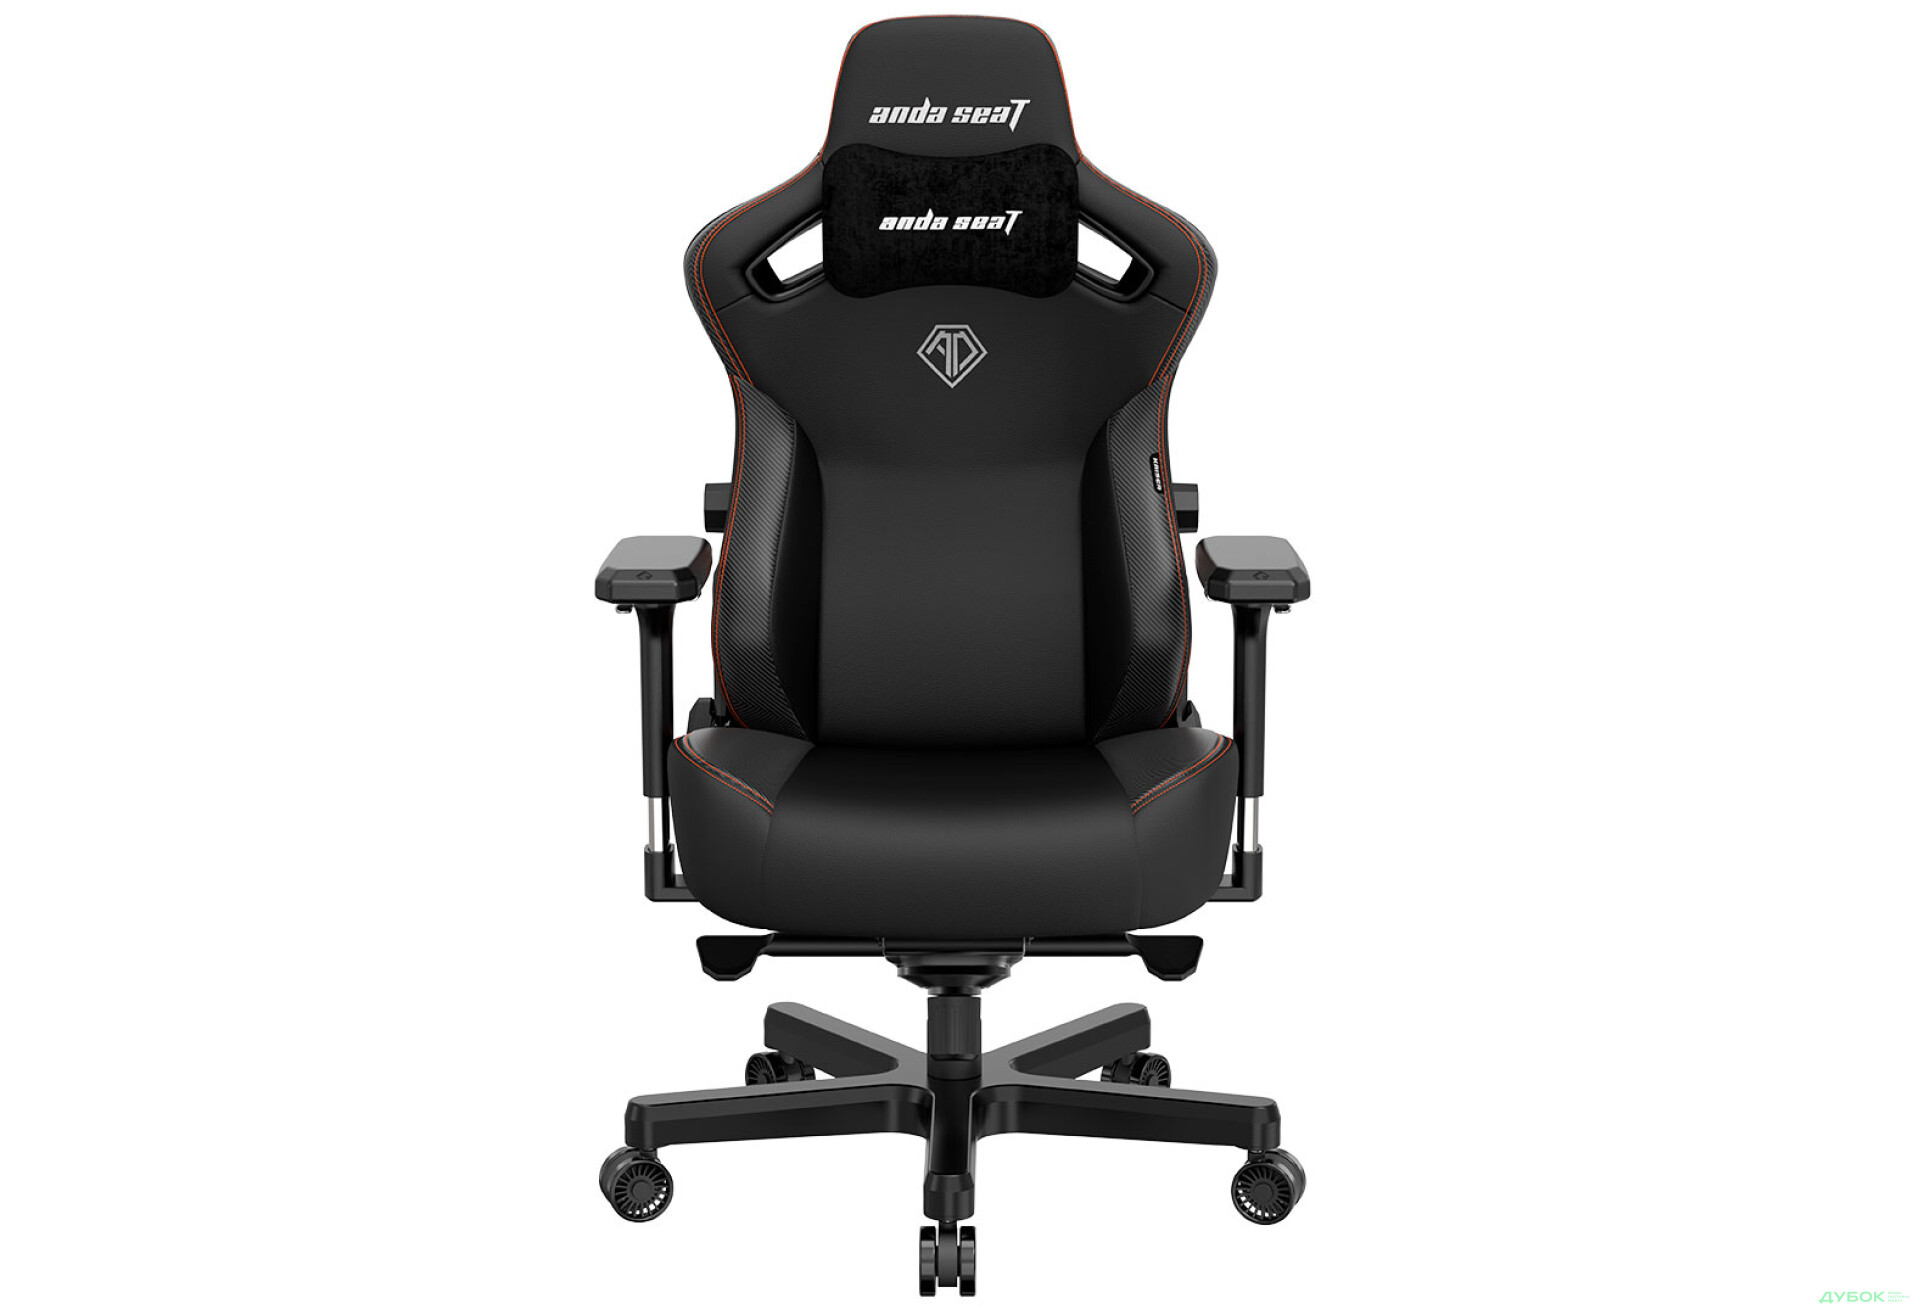 Фото 1 - Компьютерное кресло Anda Seat Kaiser 3 72x57x136 см игровое, черное